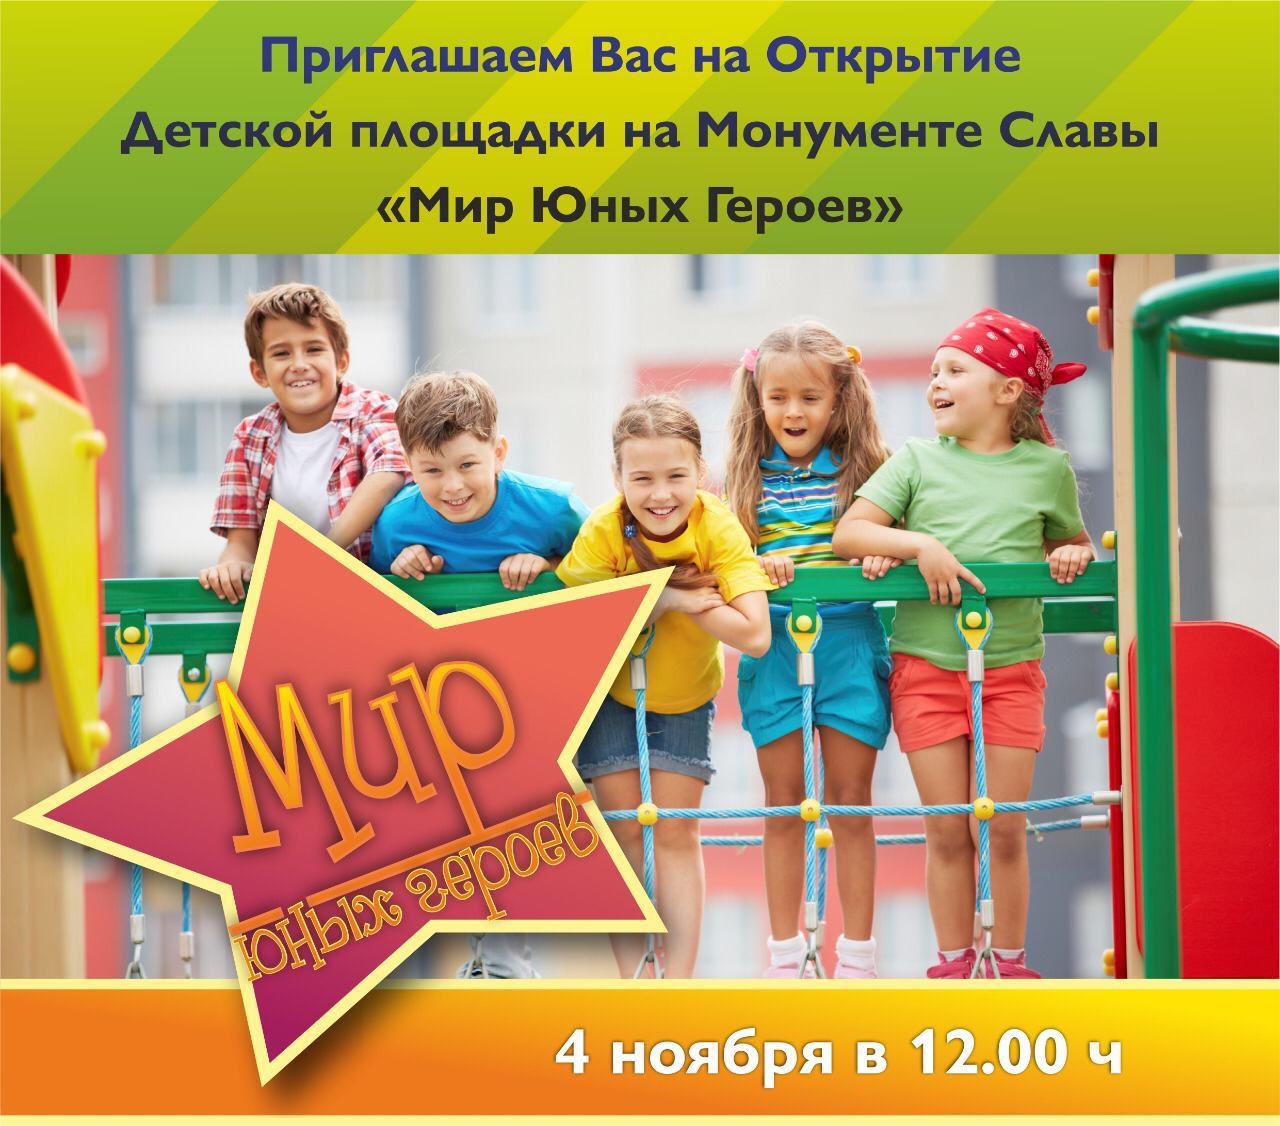 Торжественное открытие детской площадки «Мир юных героев» в сквере Славы состоится 4 ноября